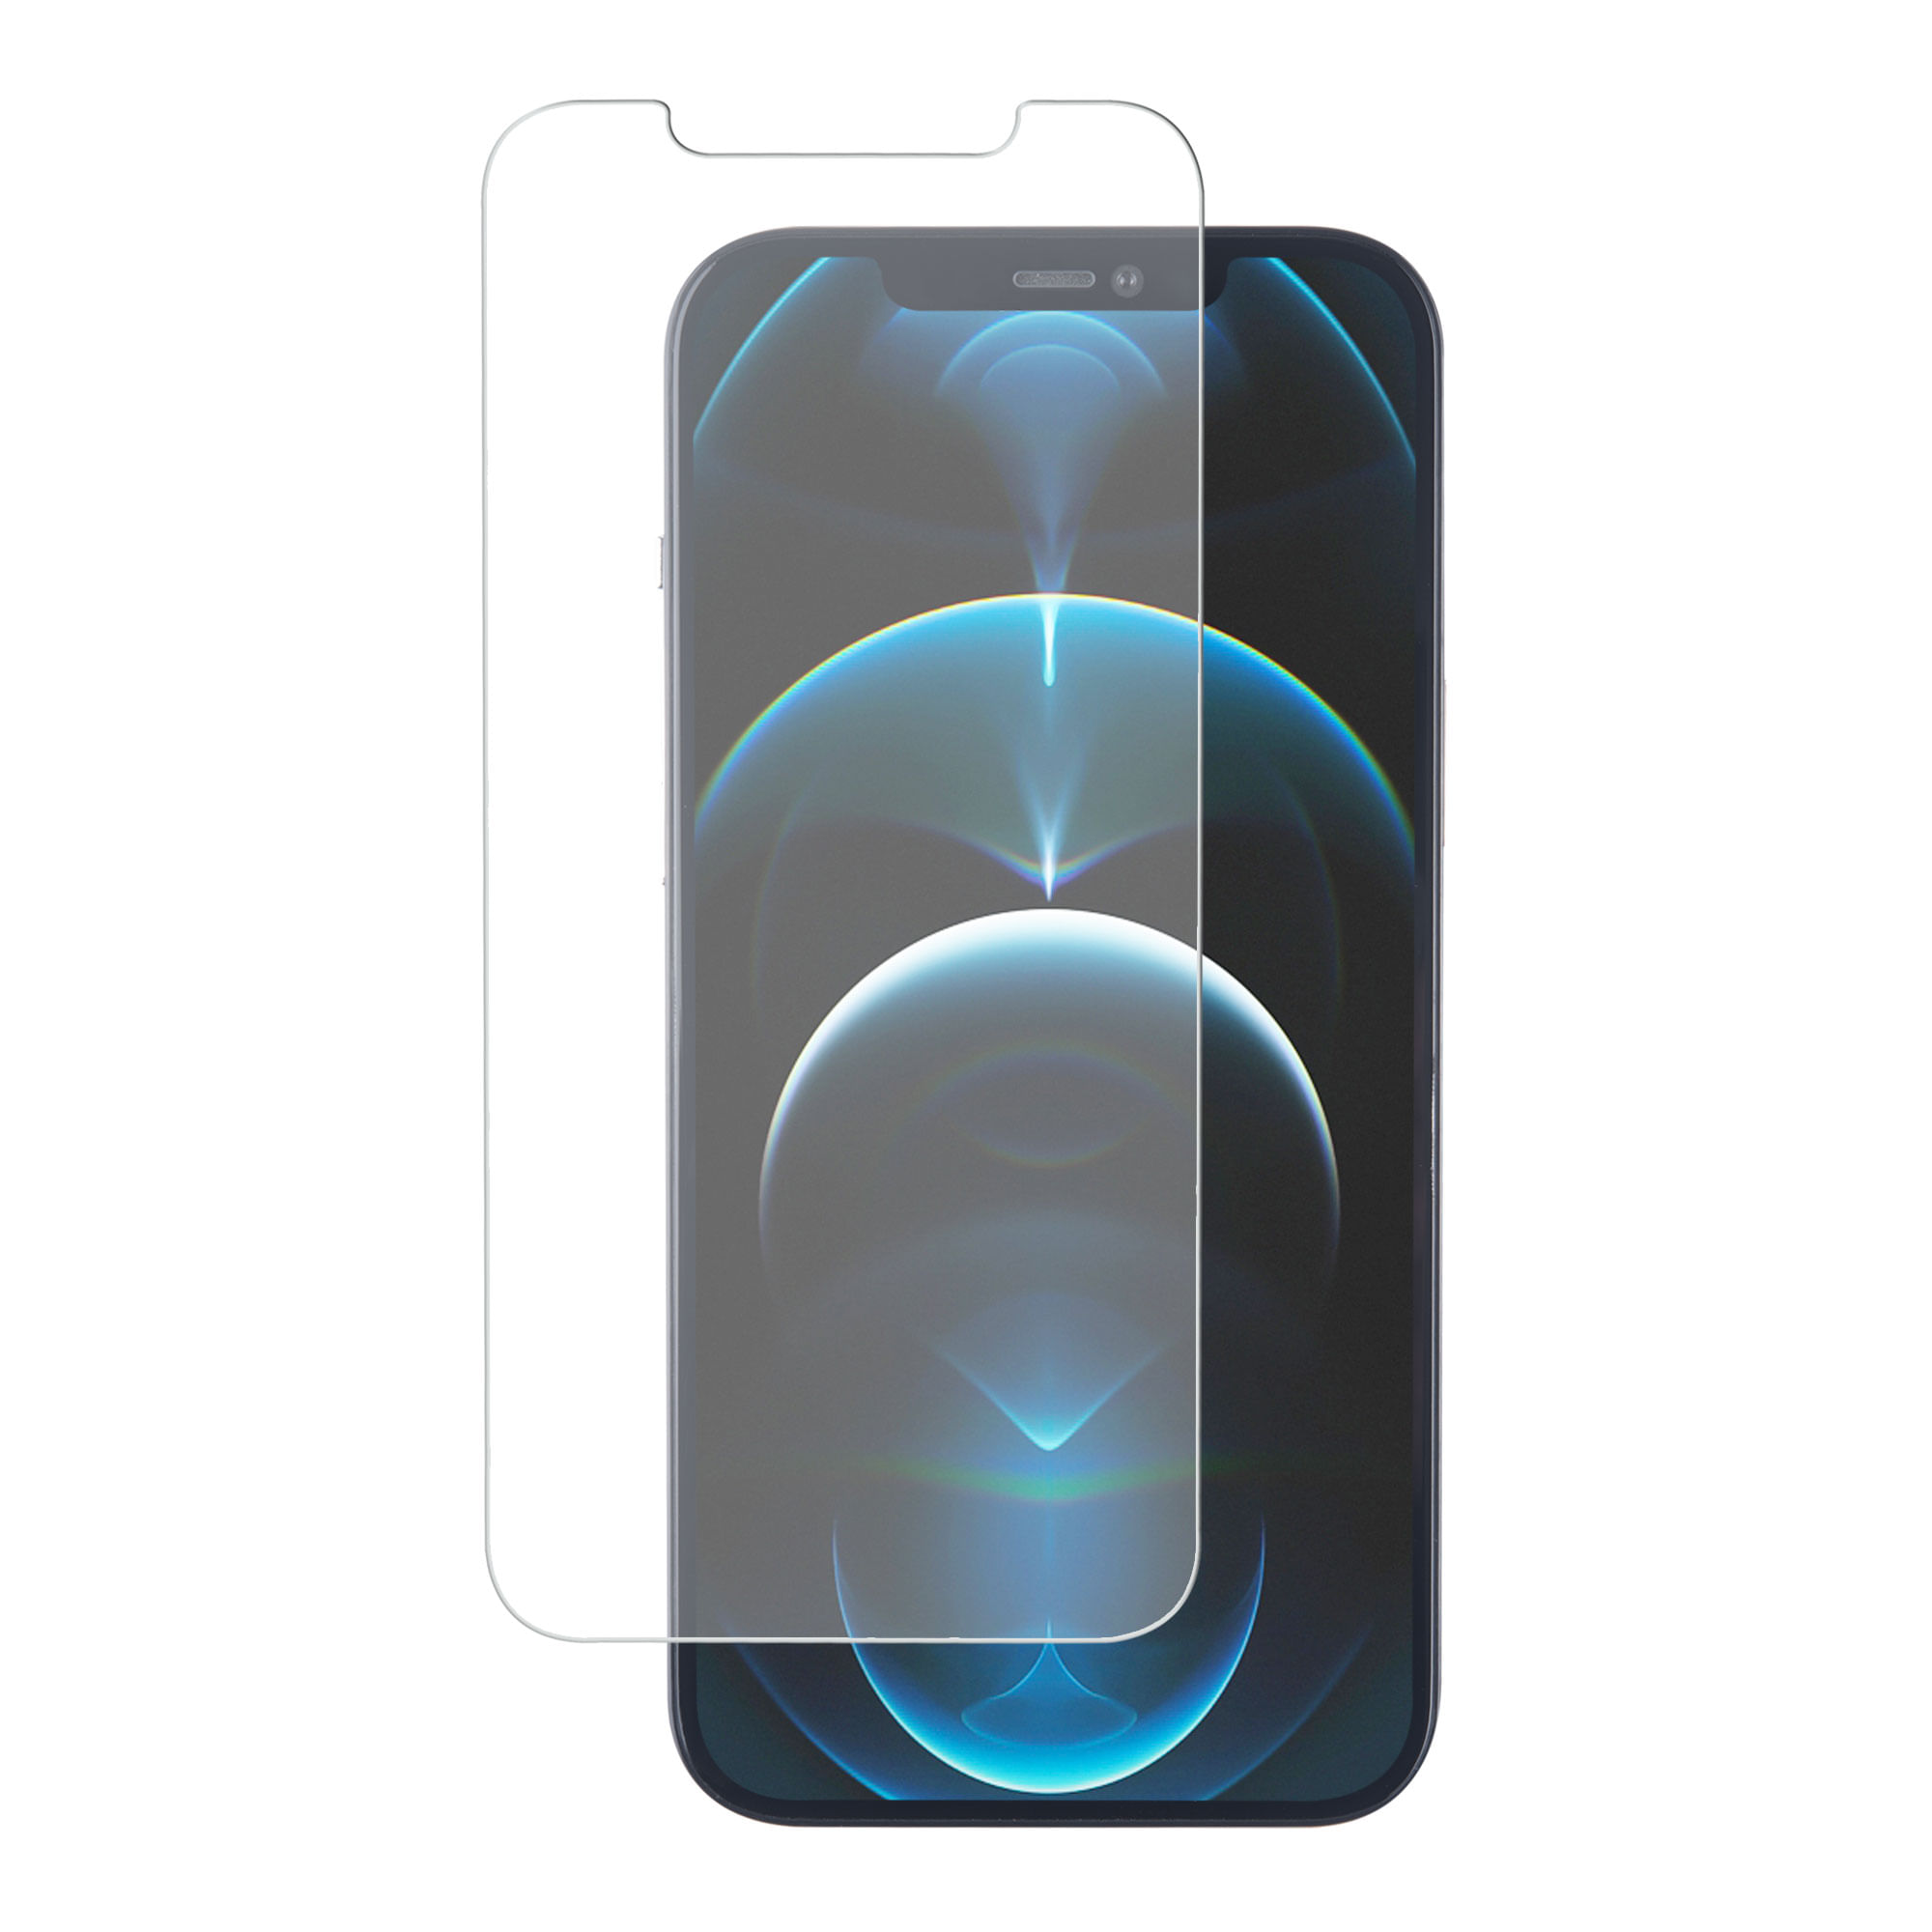 Lamina de Cristal Pure Gear para Iphone 12 - 12 Pro. Tienda Oficial.